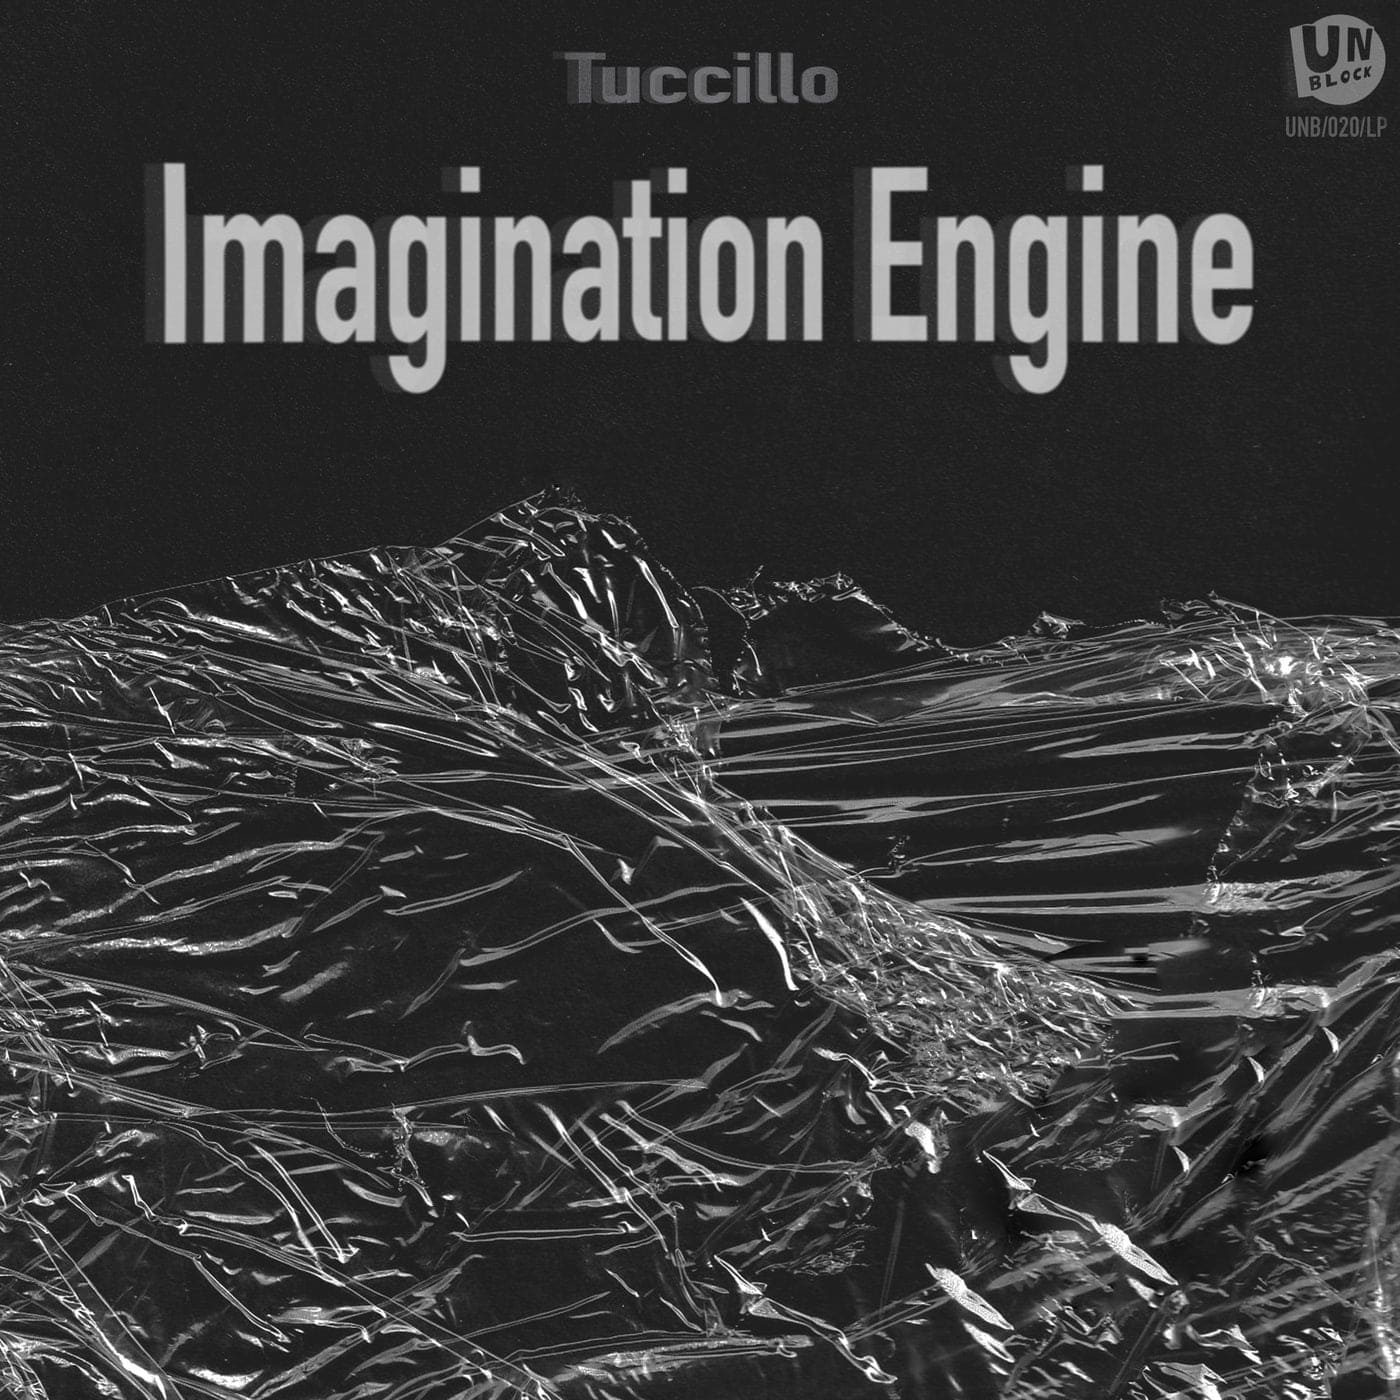 image cover: Tuccillo - Imagination Engine / UNB020